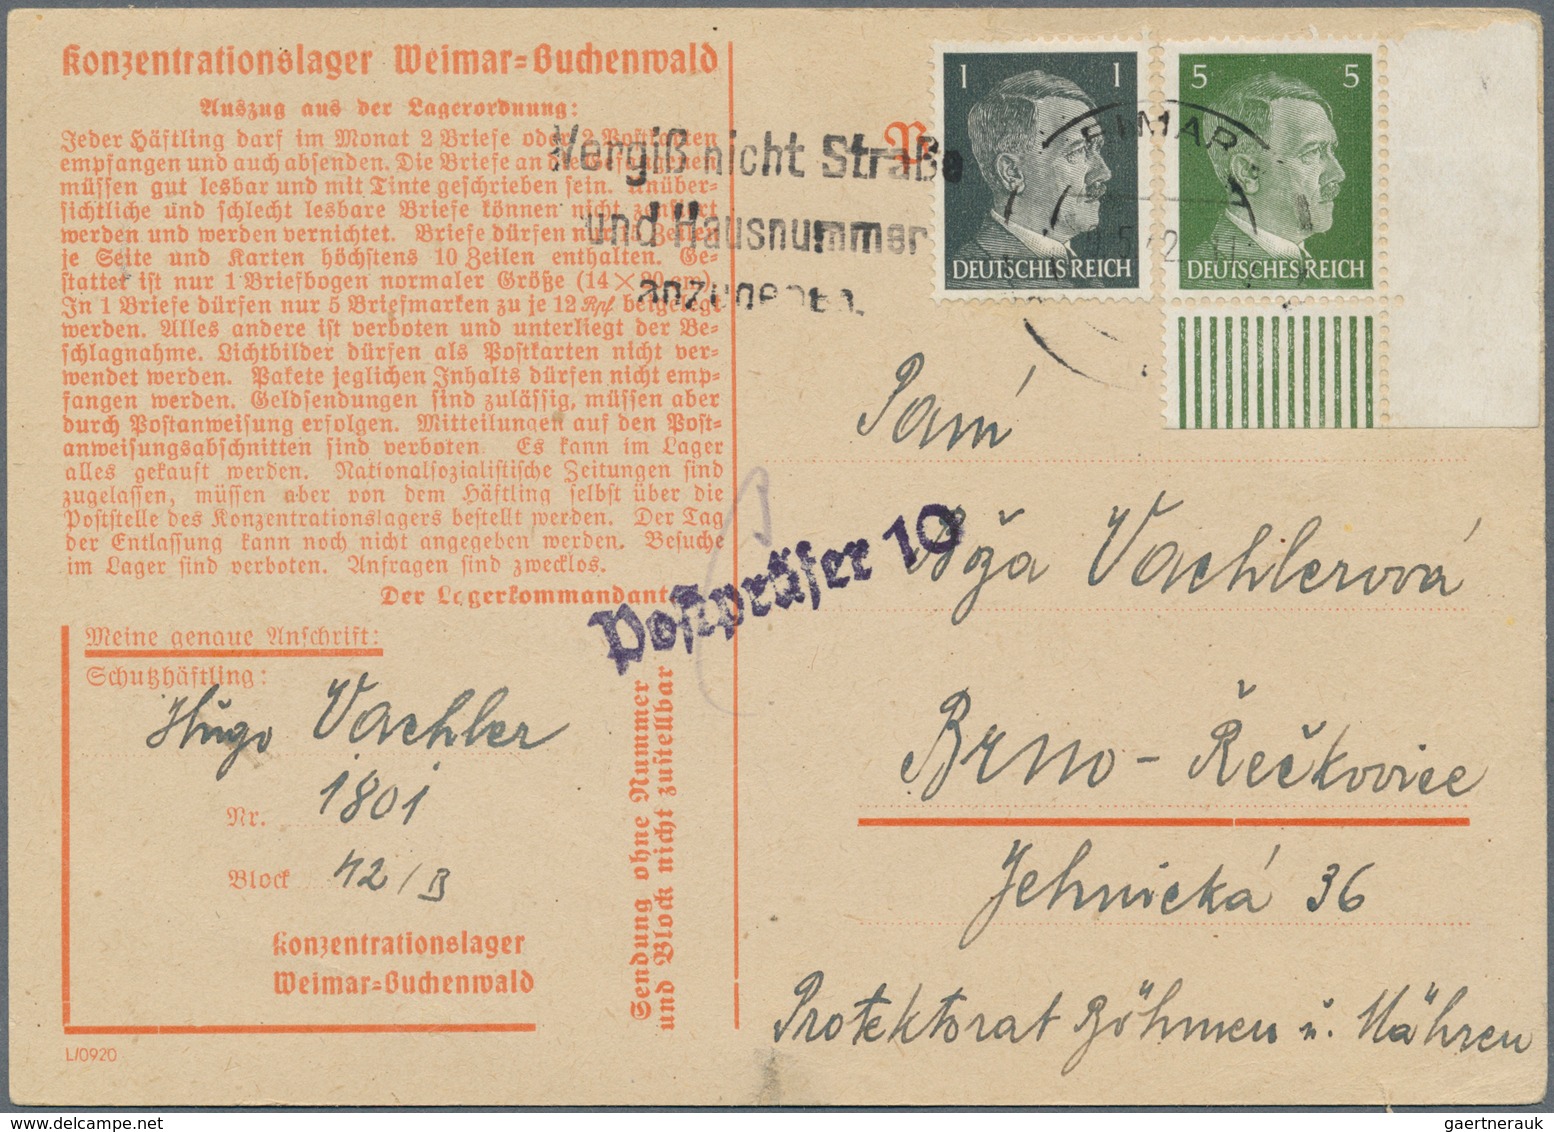 01417 KZ-Post: 1933/1945, sehr umfangreicher und detaillierter Sammlungsbestand mit ca. 260 Belegen im Bri